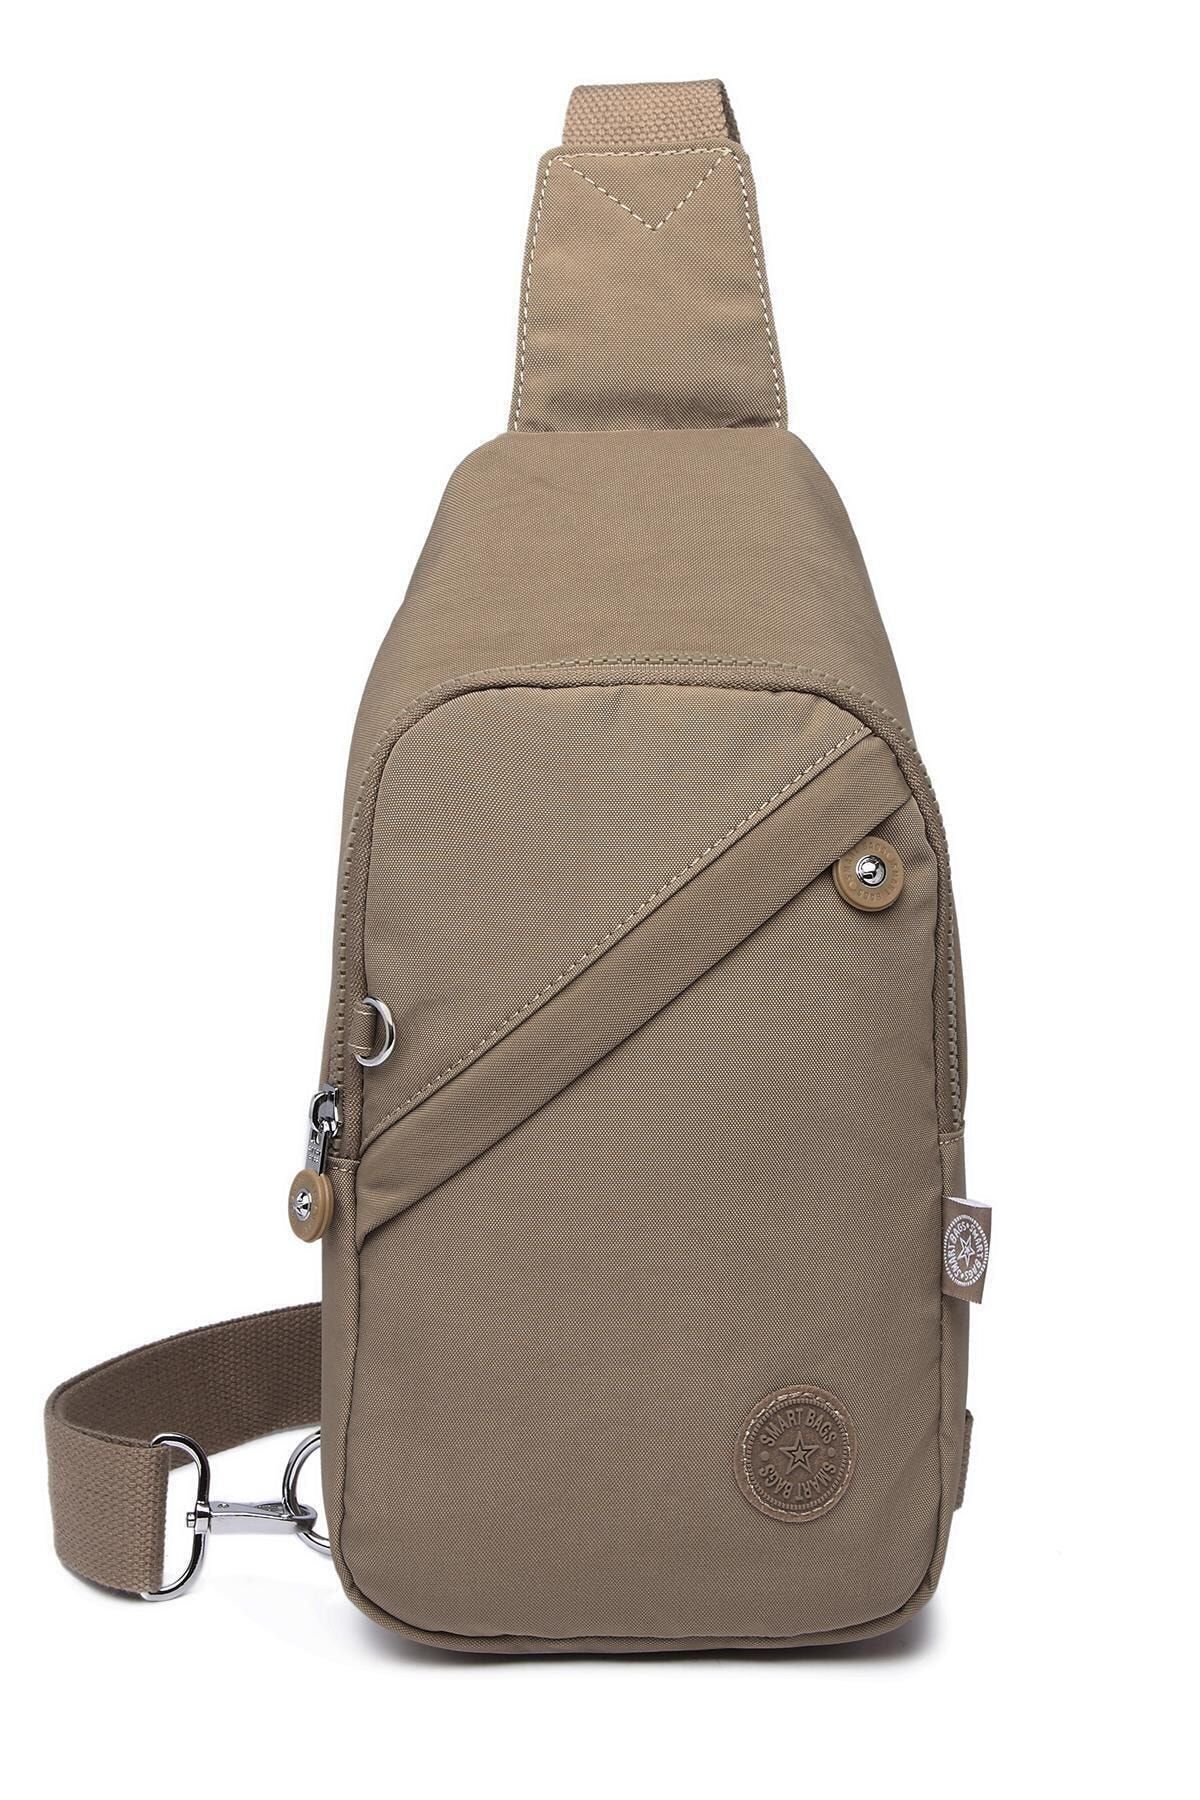 Smart Bags Smb1239 Açık Kahverengi Kadın Body Bag